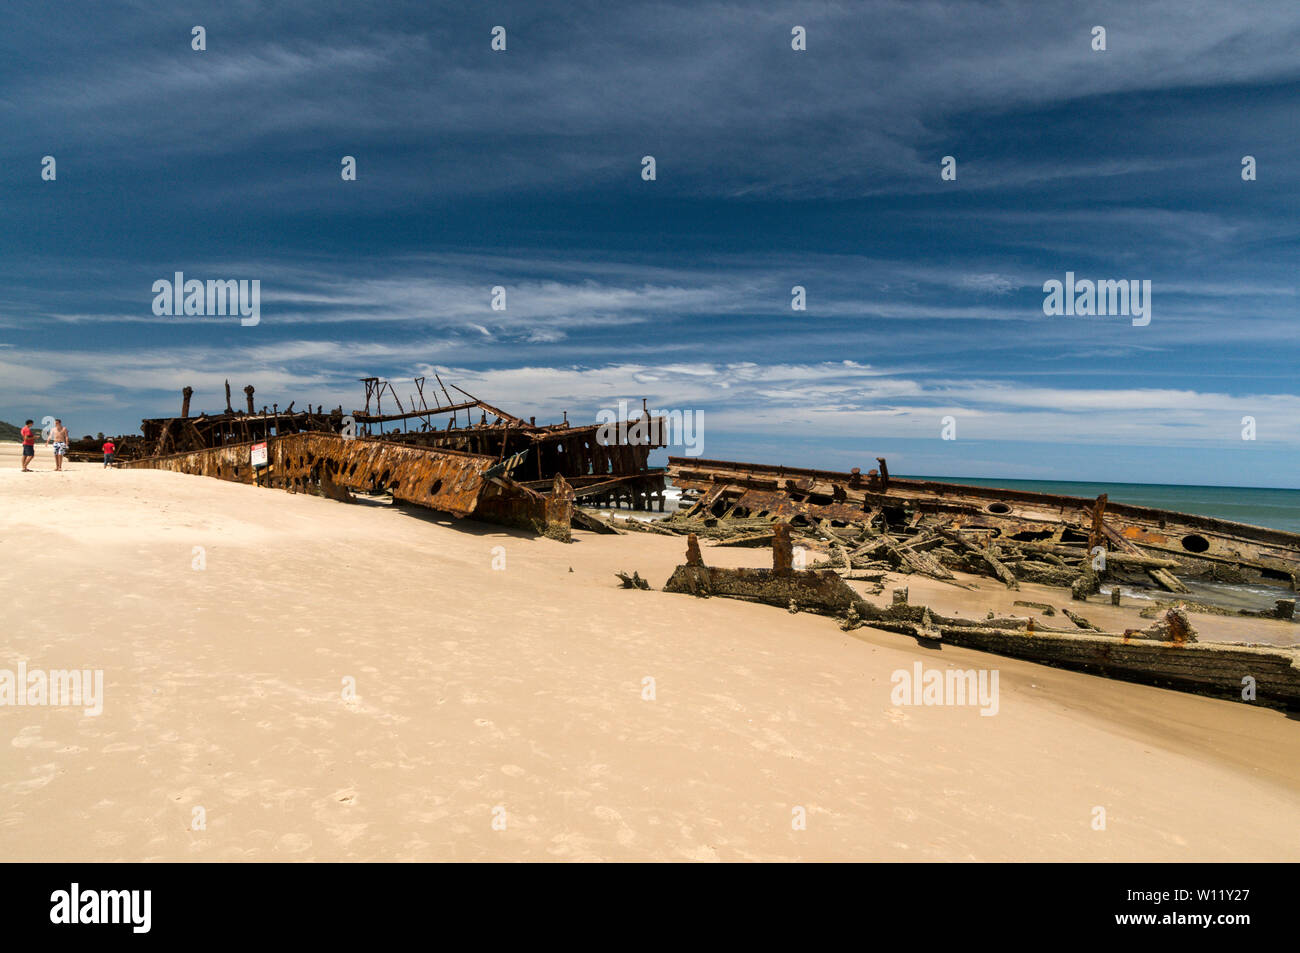 L'épave rouillée d'un navire-hôpital de New Zeland, le SS Maheno, est un point de repère sur la plage de 75 kilomètres qui fait face à la mer de Corail sur l'île Fraser, dans le Queensland Banque D'Images